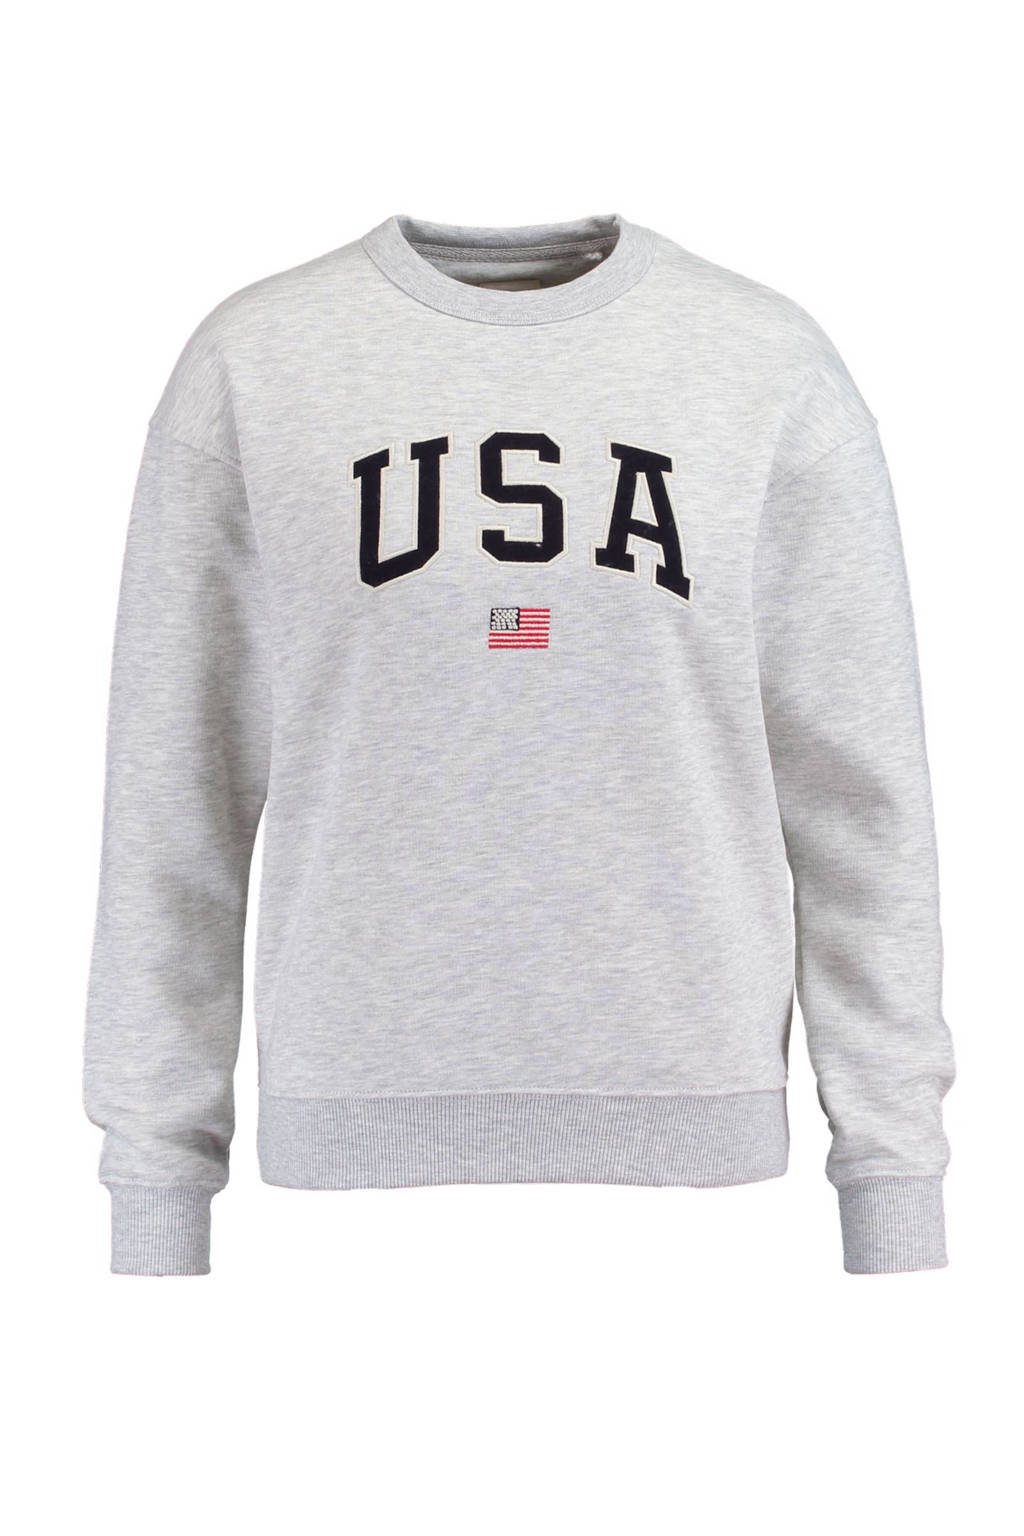 America Today sweater Soel grijs